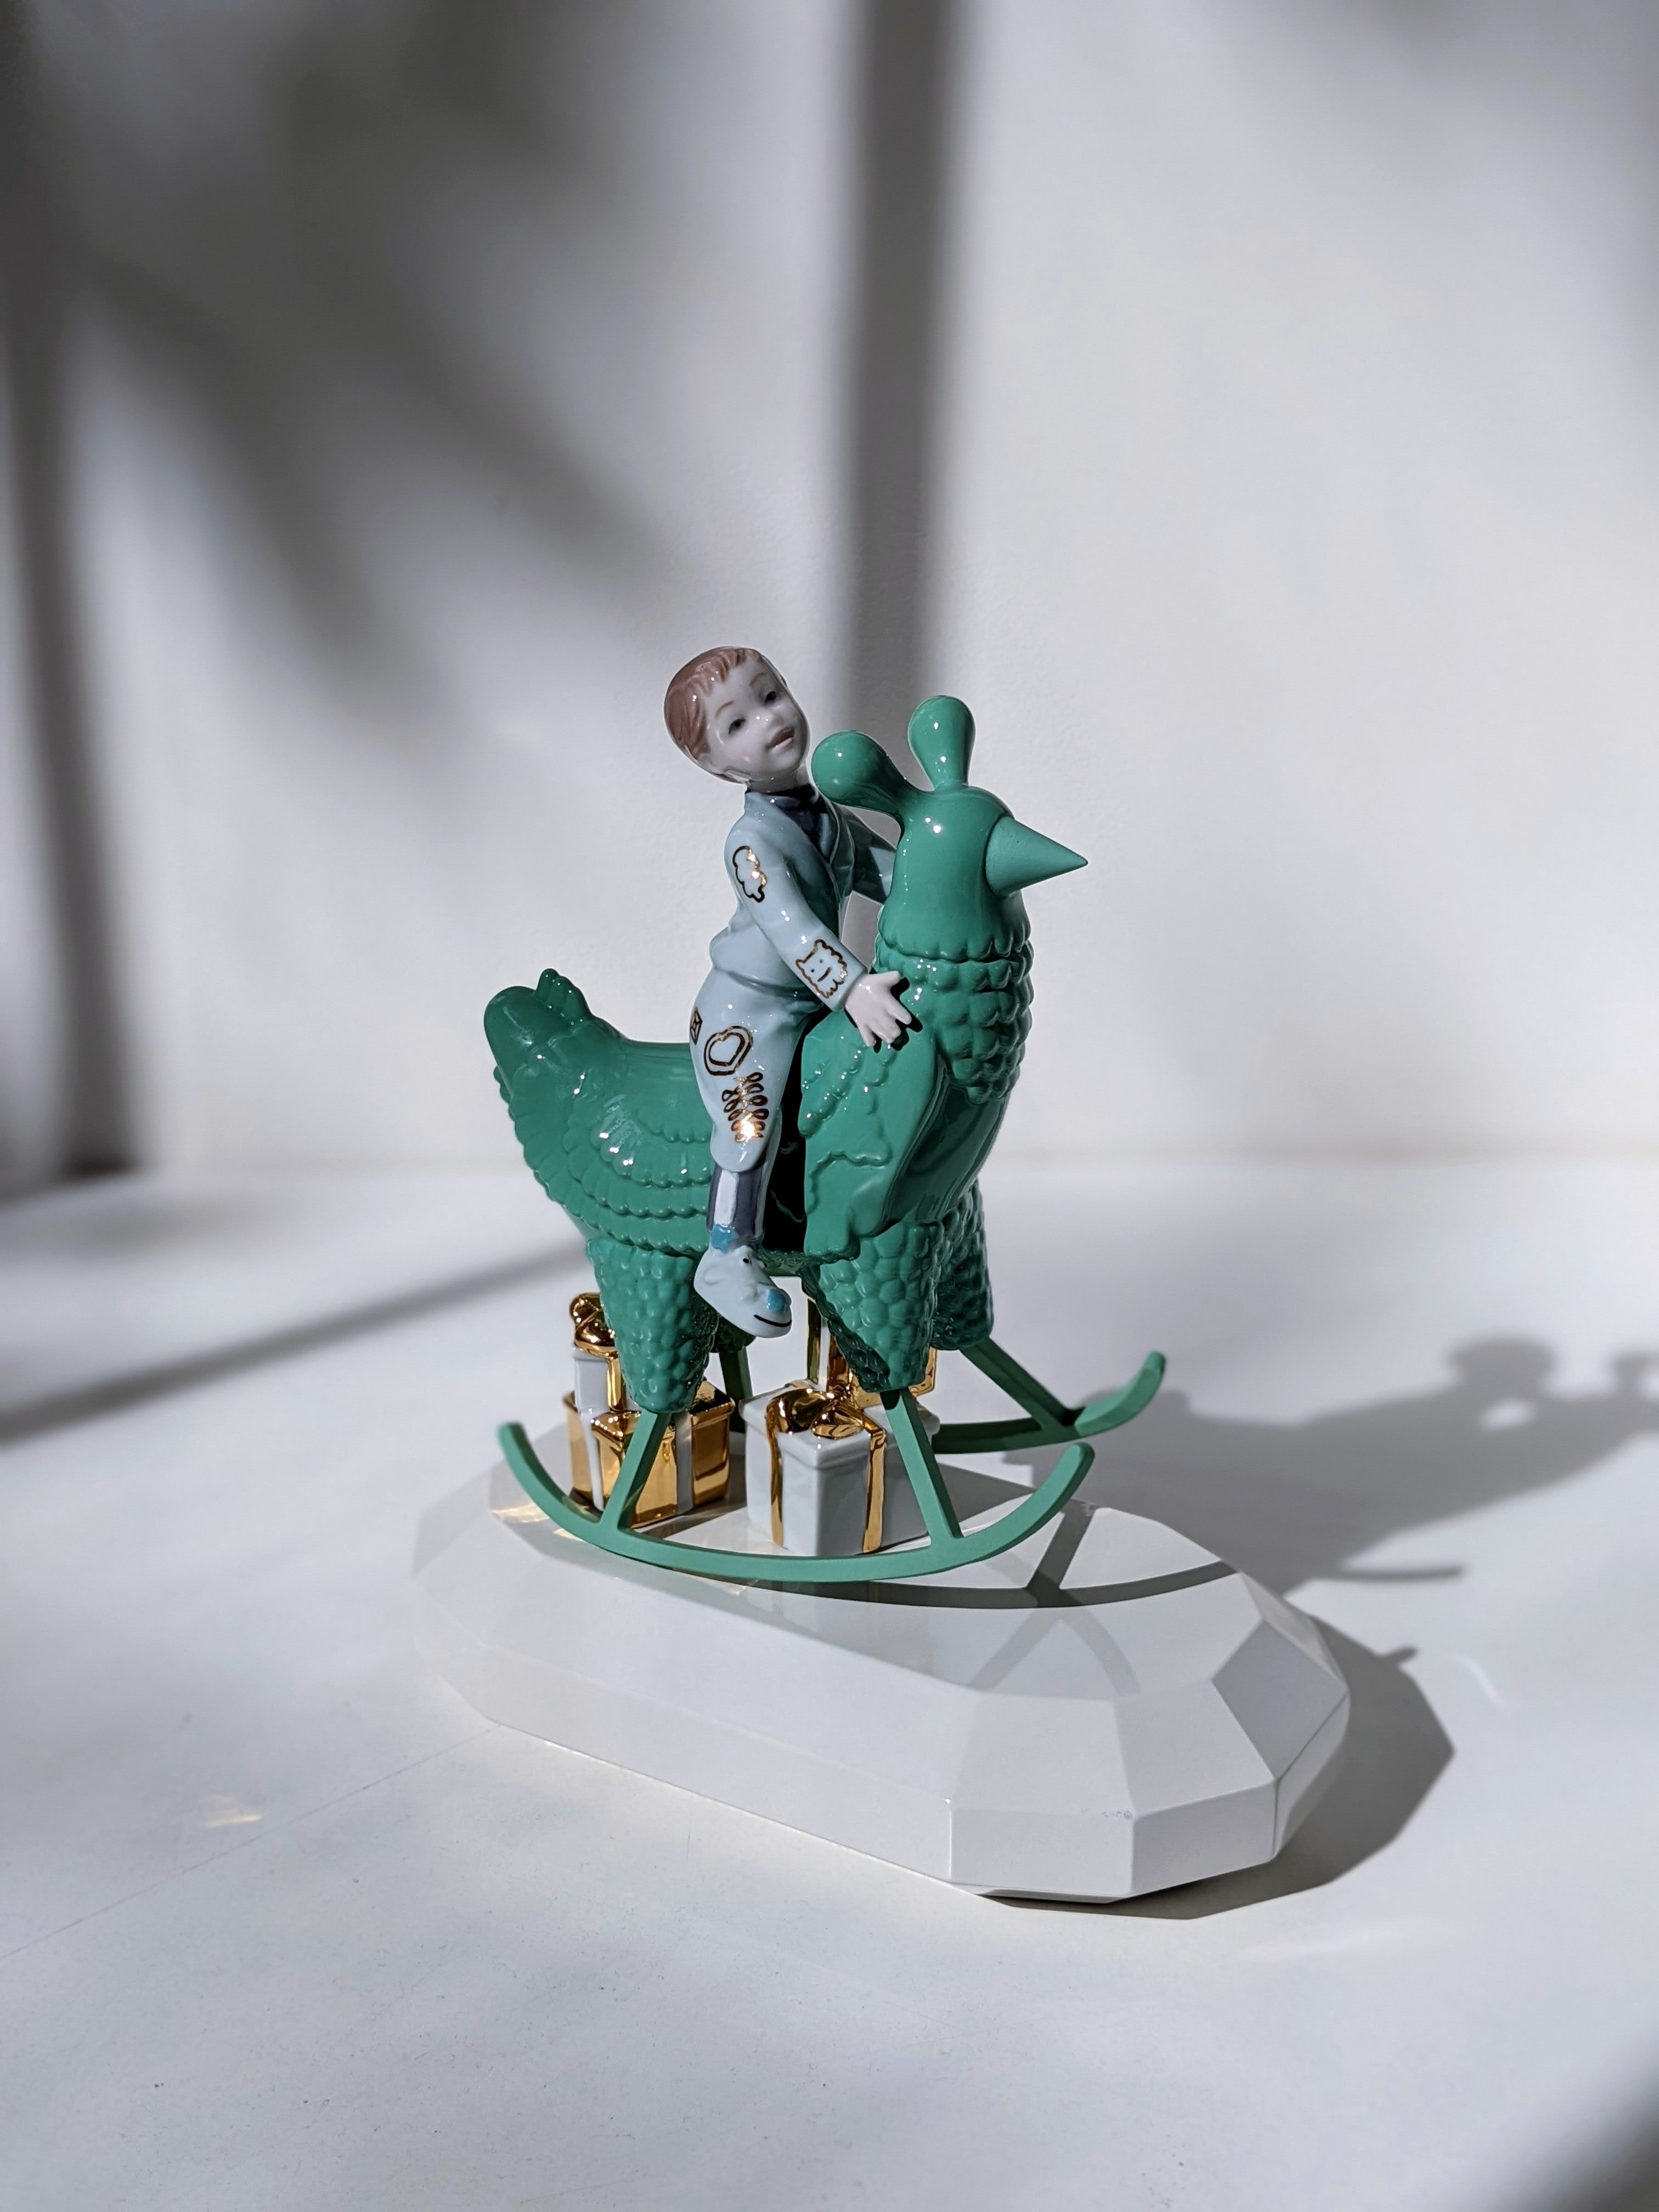 The Rocking Chicken Ride Sculpture by Jaime Hayon – FormFluent